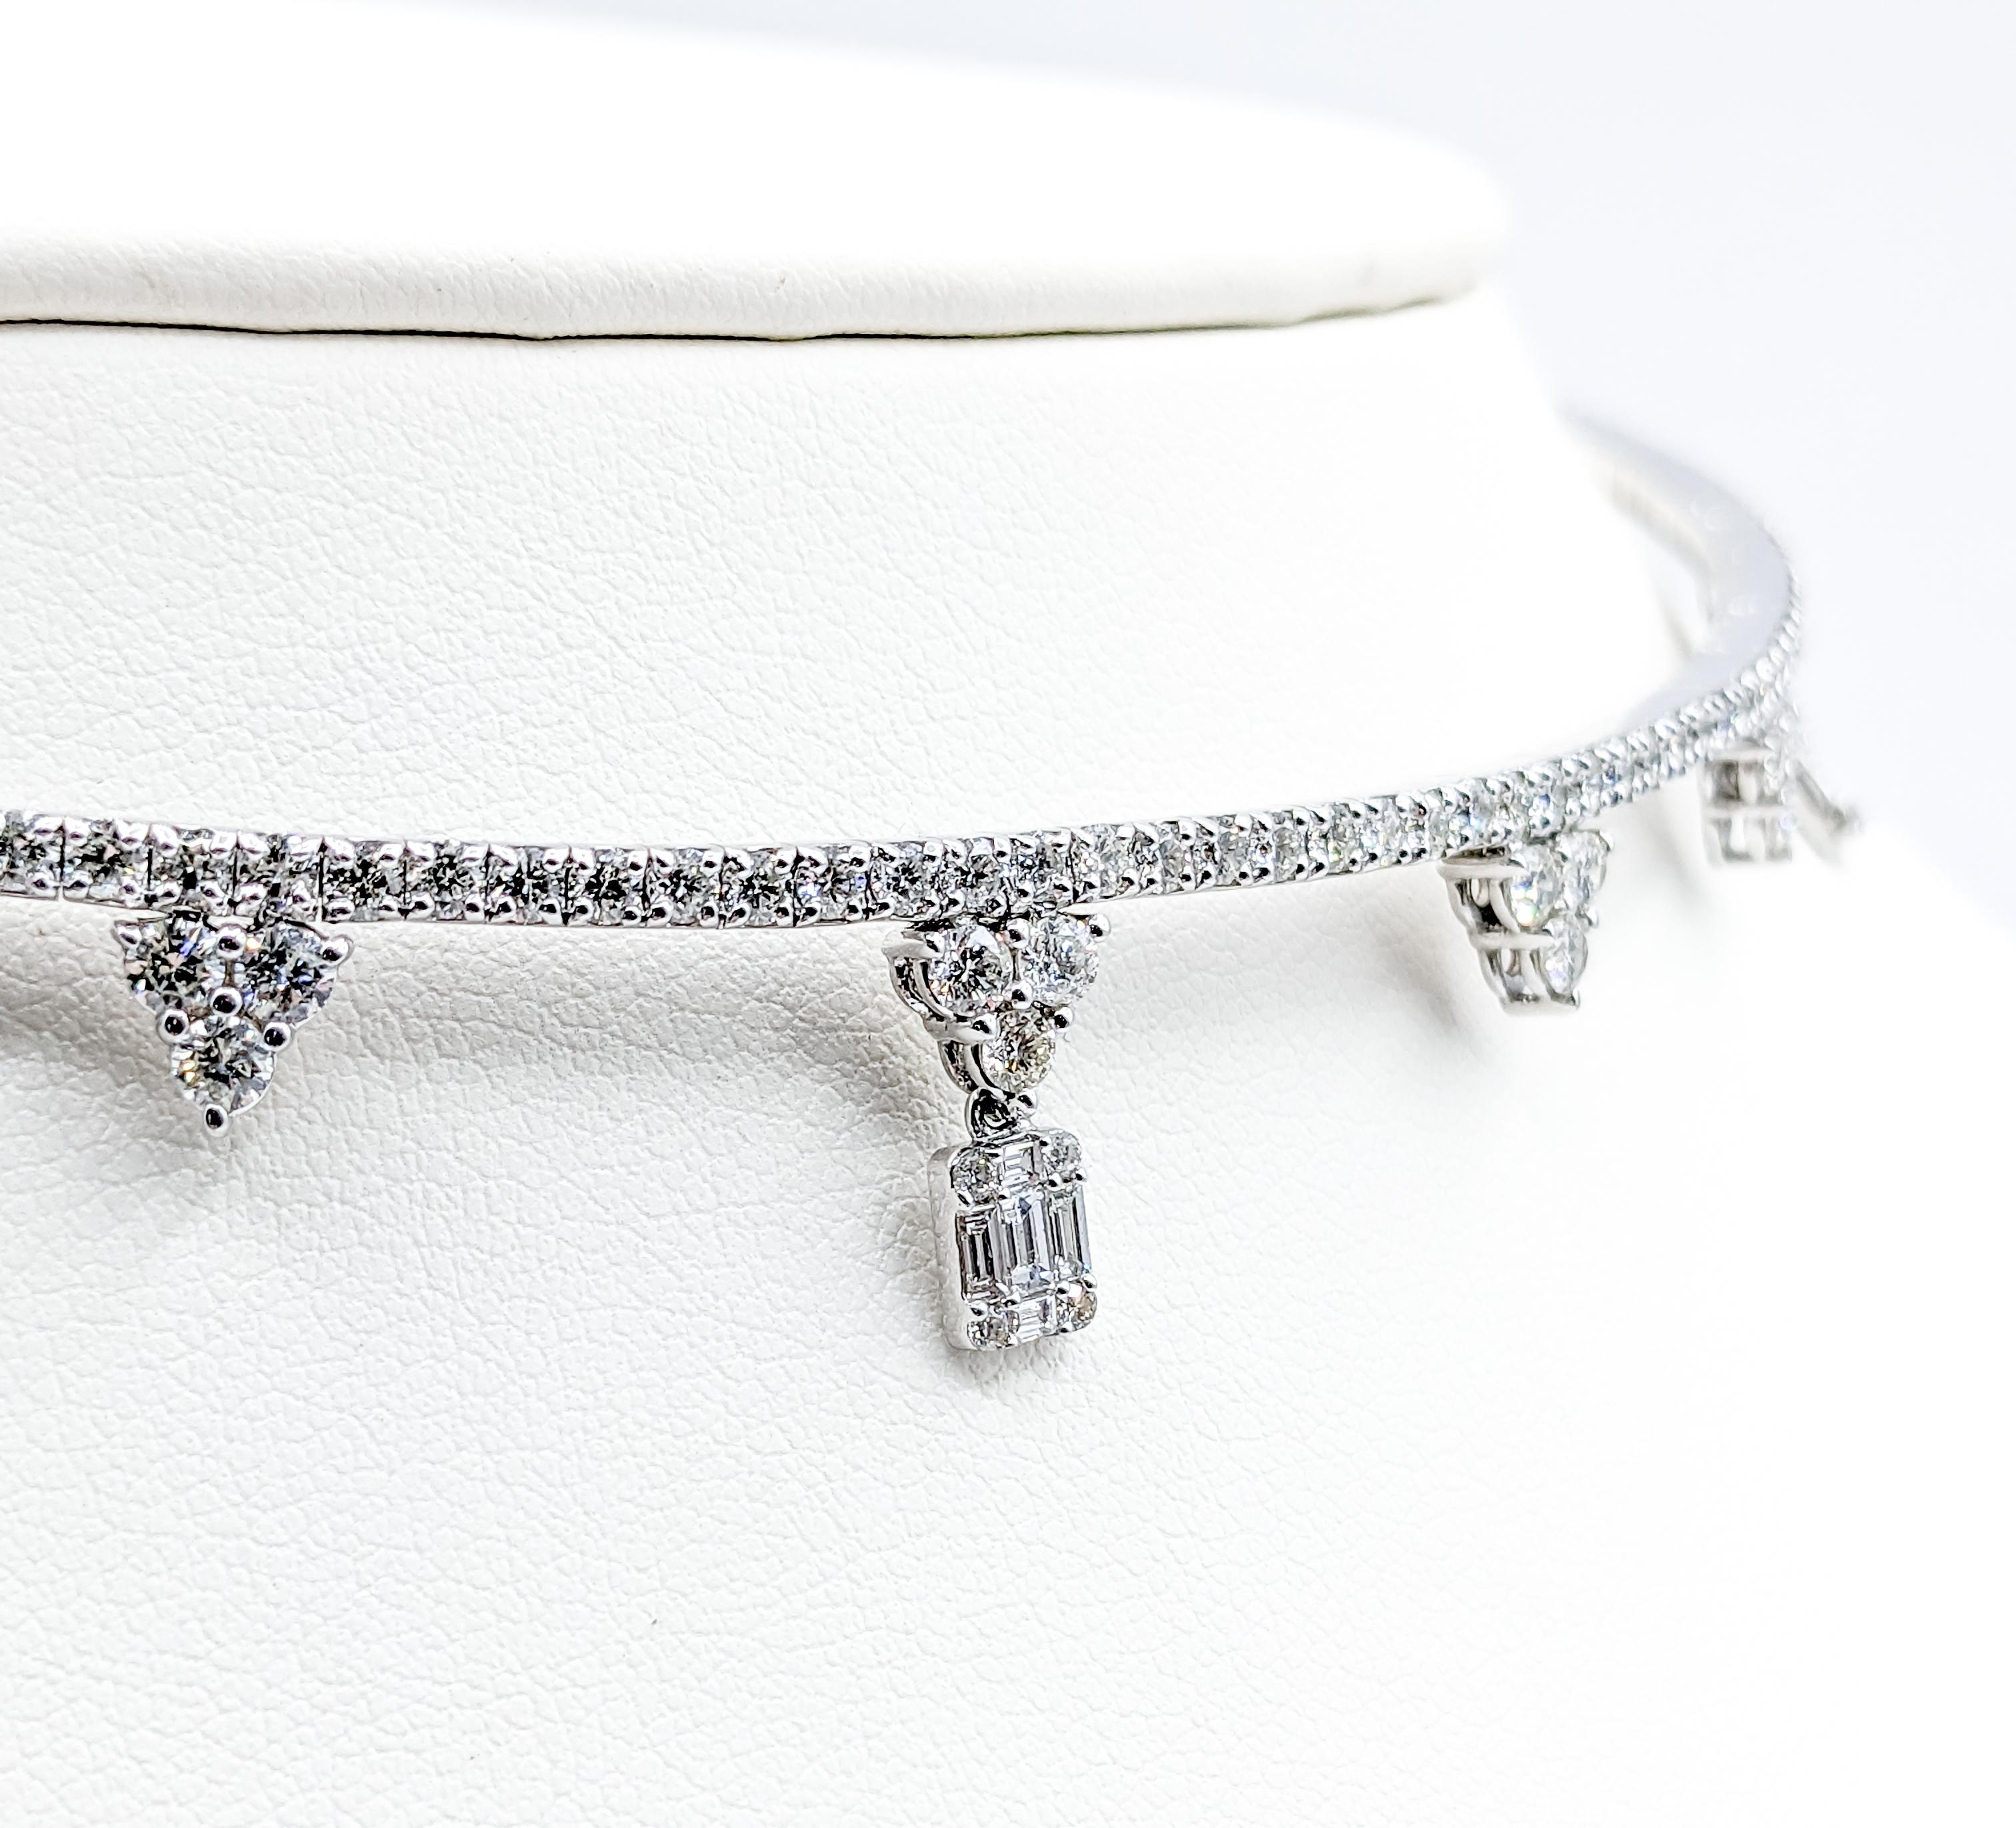 Découvrez une symphonie de savoir-faire et d'éclat avec notre collier ras de cou flexible en diamant 5,27ctw et or blanc 14K, une pièce qui allie harmonieusement luxe et sophistication.

Plongez dans l'allure radieuse de 5,27 carats de diamants